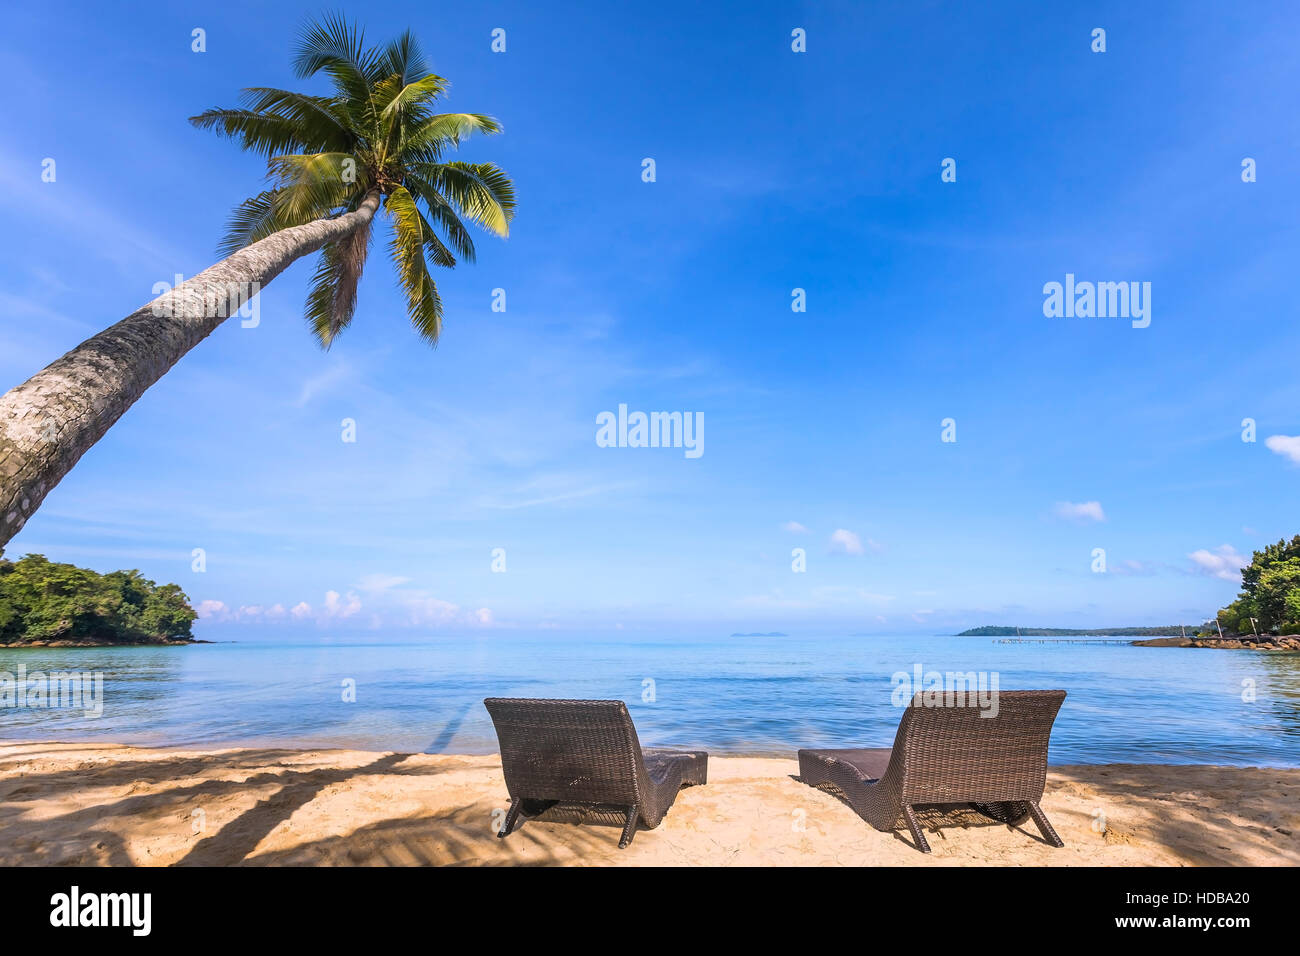 Paradise spiaggia tropicale con un bellissimo albero di palma e due sedie a sdraio sulla sabbia, una vacanza rilassante Foto Stock